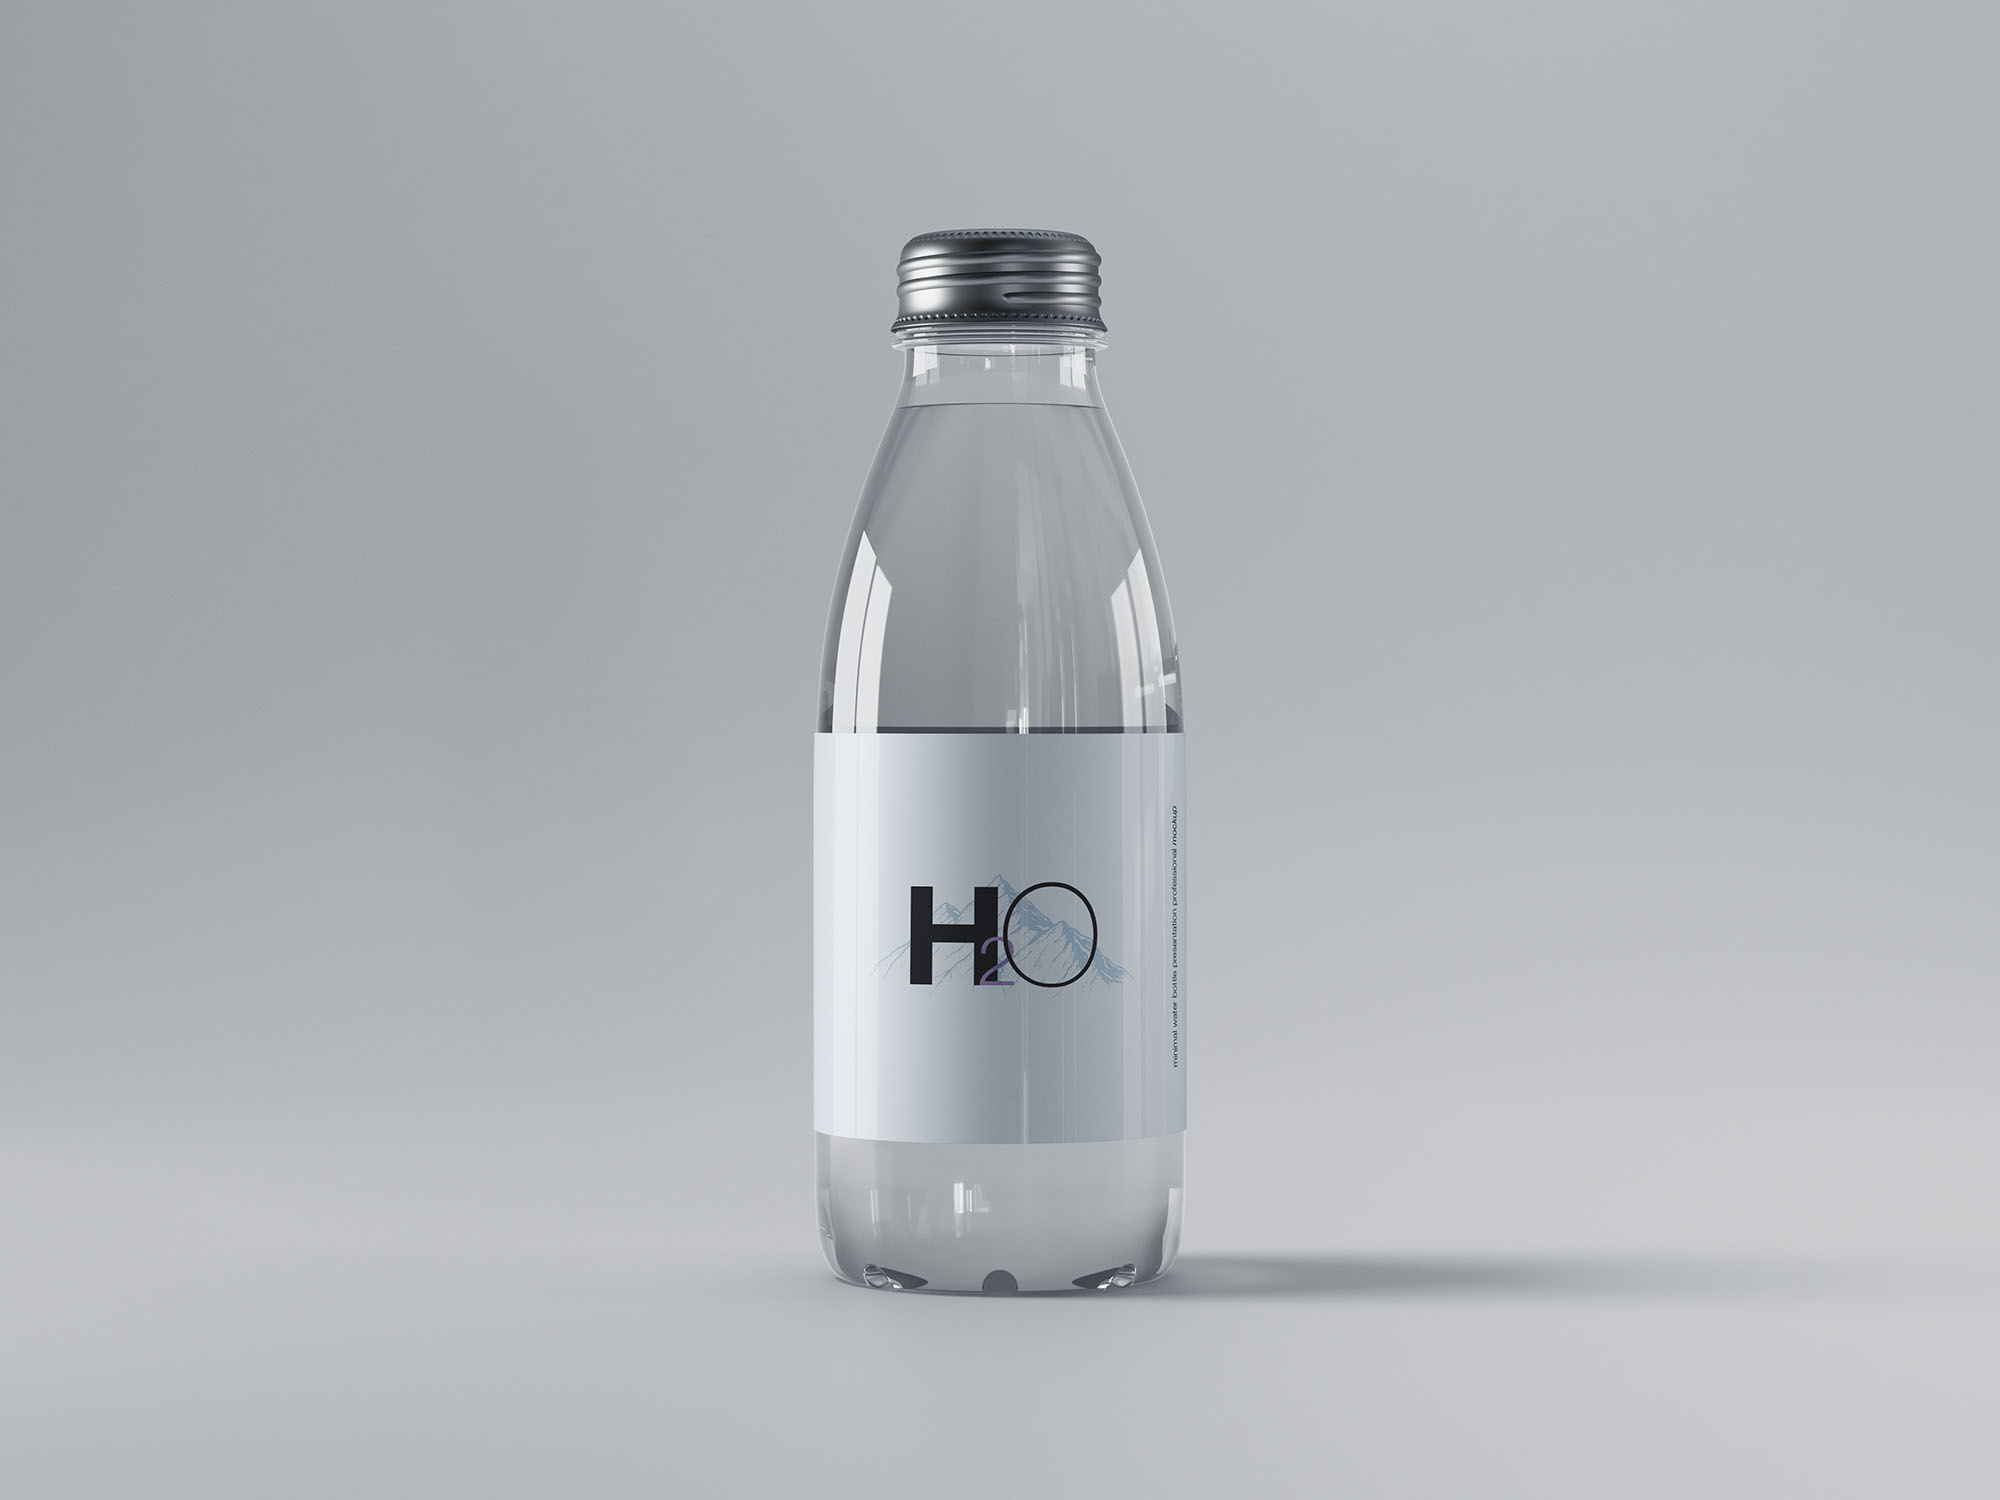 迷你透明玻璃水瓶样机 Mini Glass Water Bottle Mockup 样机素材 第1张